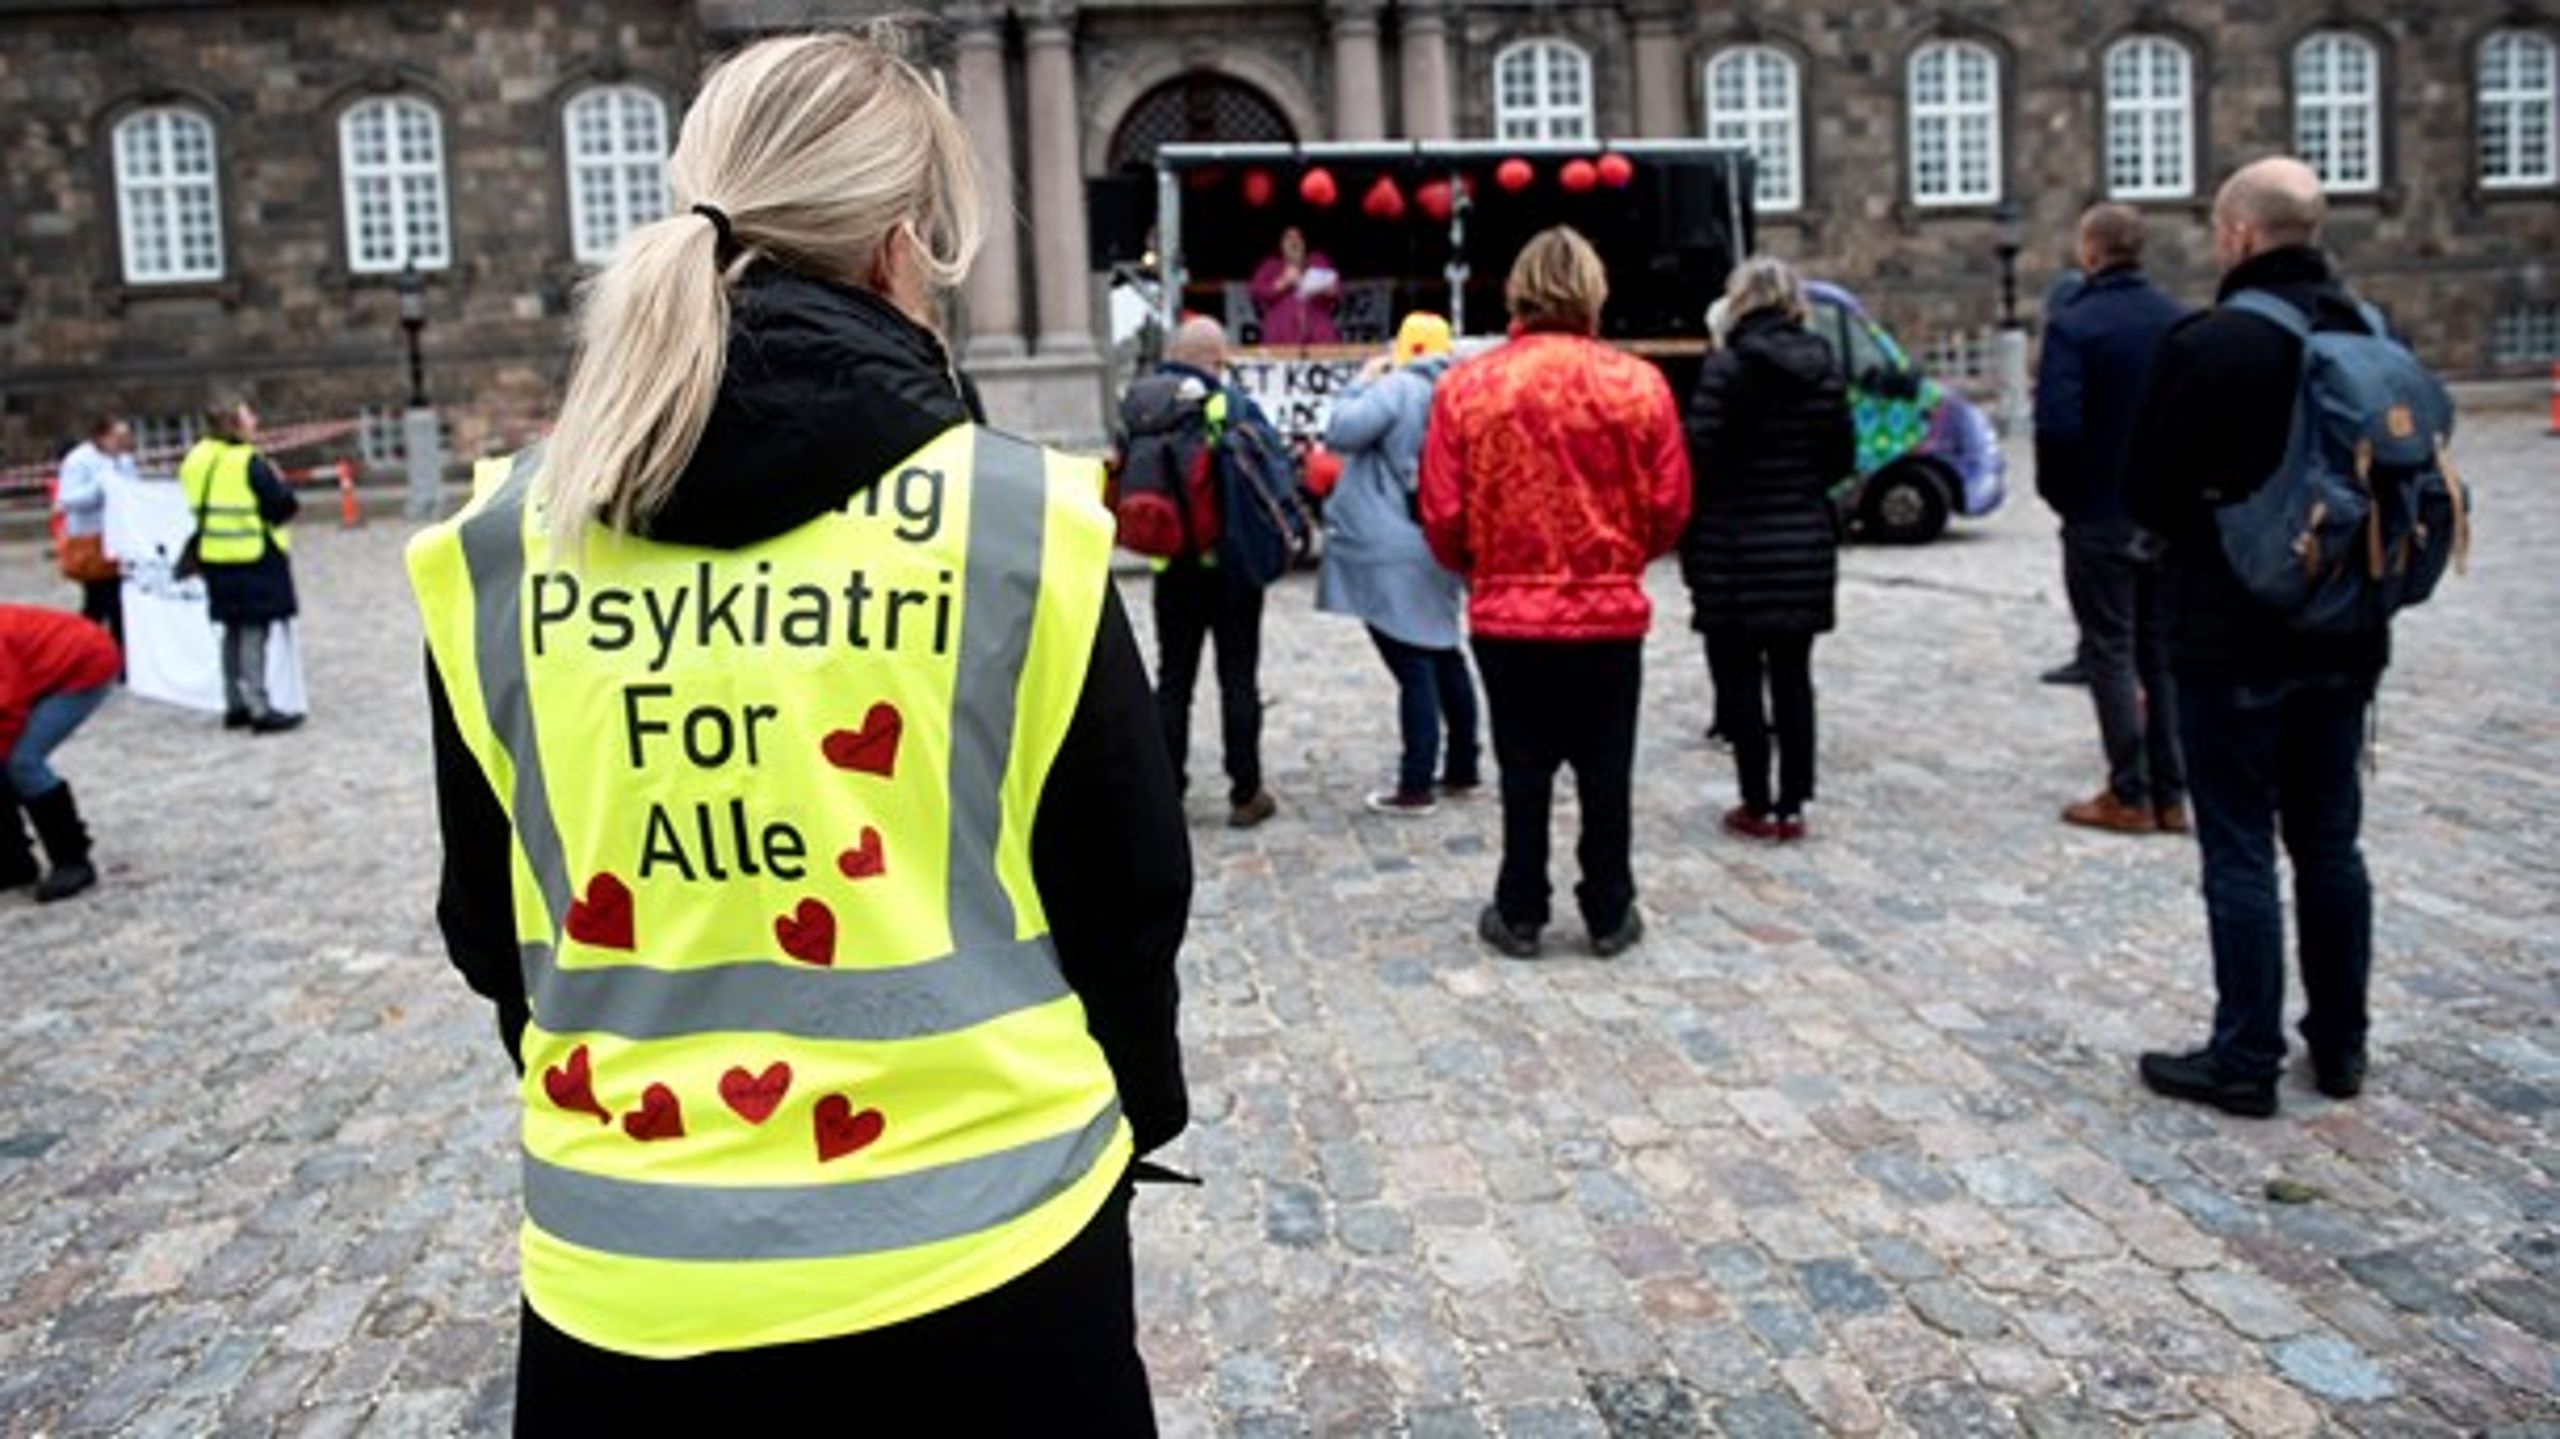 Politikerne på Christiansborg skal i arbejdet med tiårsplanen for psykiatrien få alle pointer og synsvinkler med – også de unges, skriver Pernille Schnoor og Sille Andrea Nørgaard.